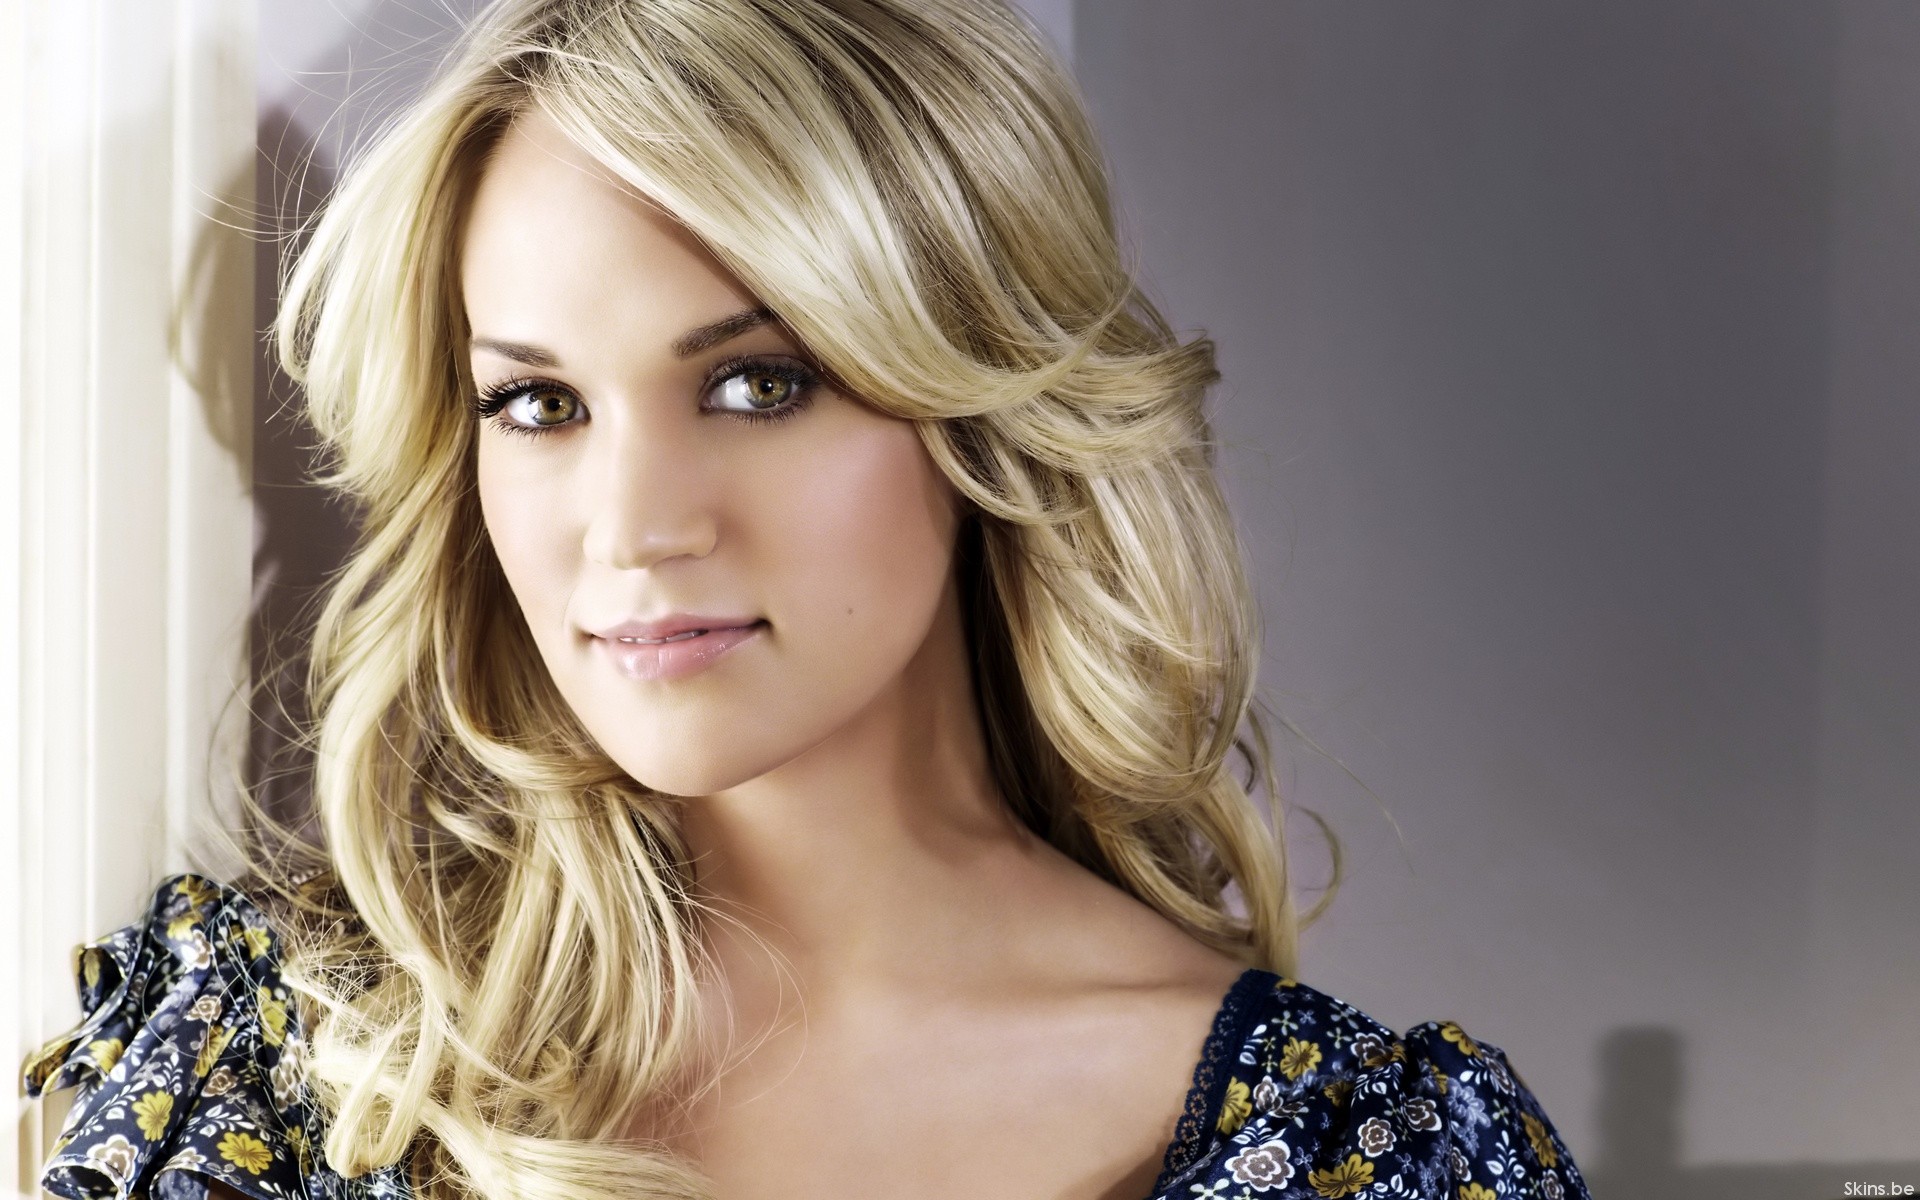 blondes, women, Carrie Underwood - desktop wallpaper